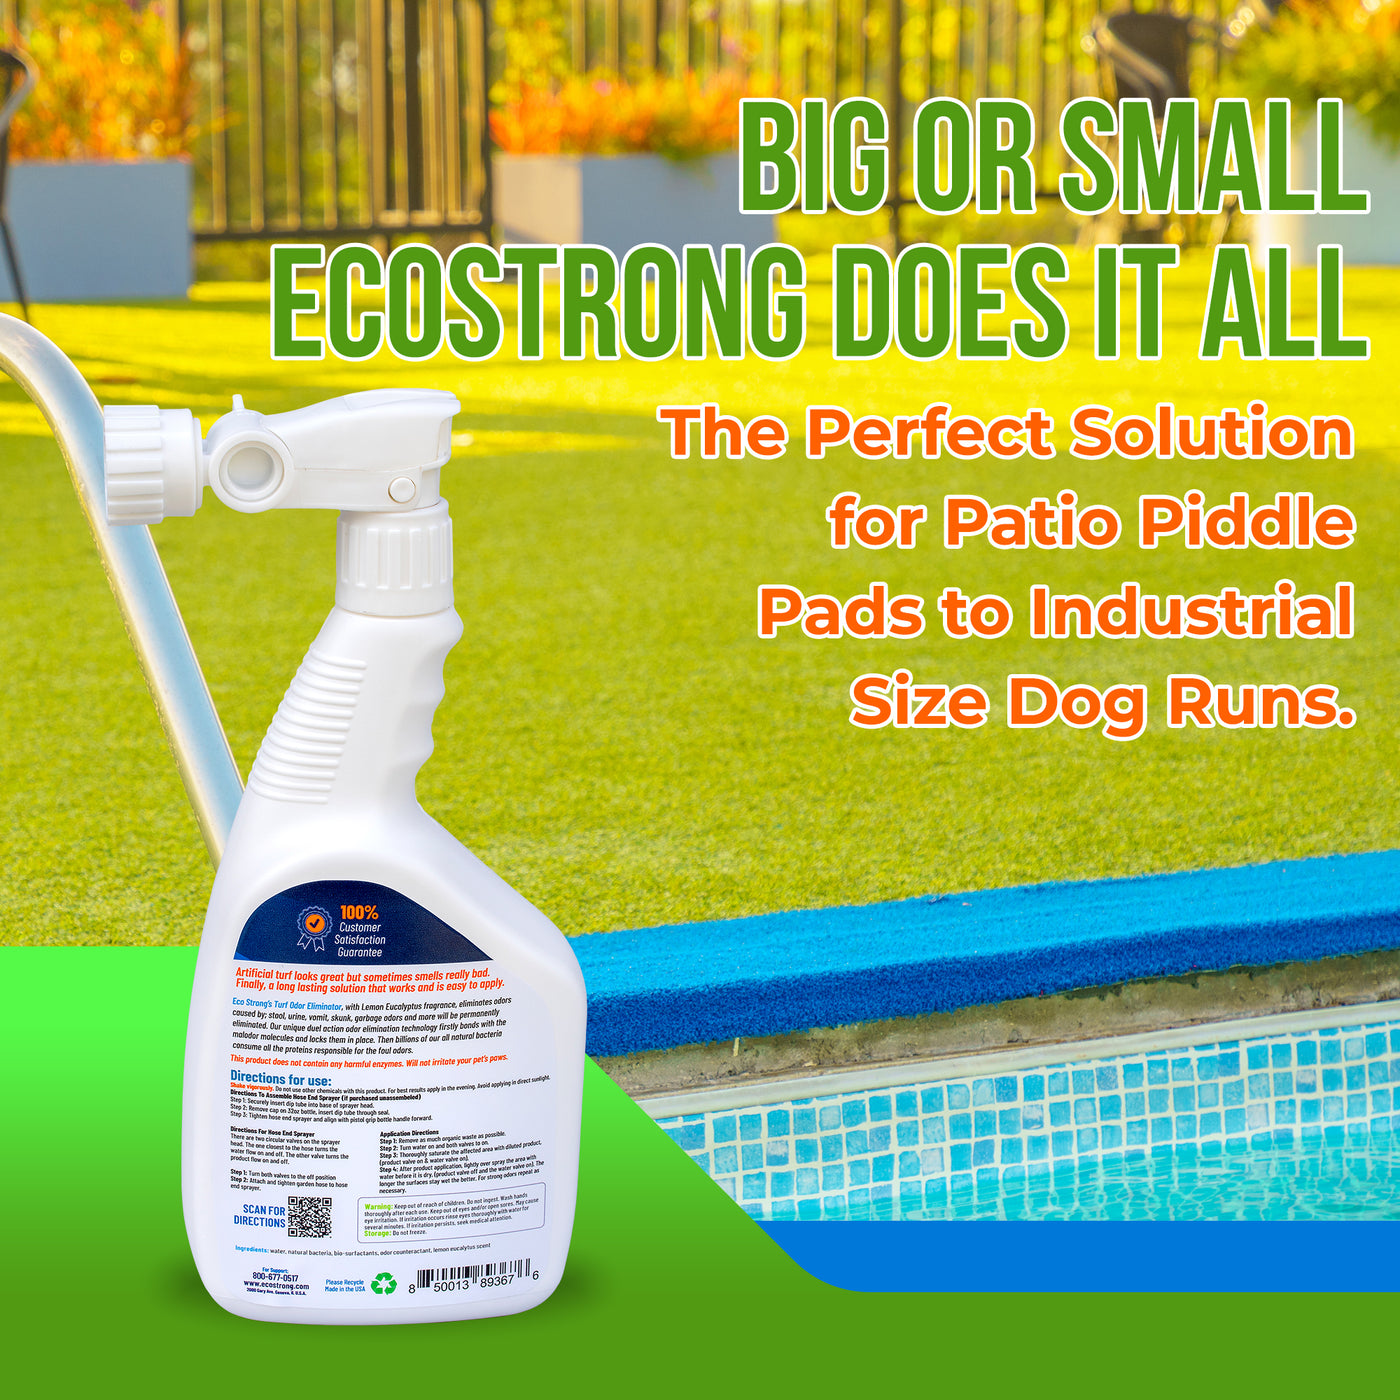 EcoStrong Turf Odor Eliminator#size_32-oz-hose-end-sprayer-bottle